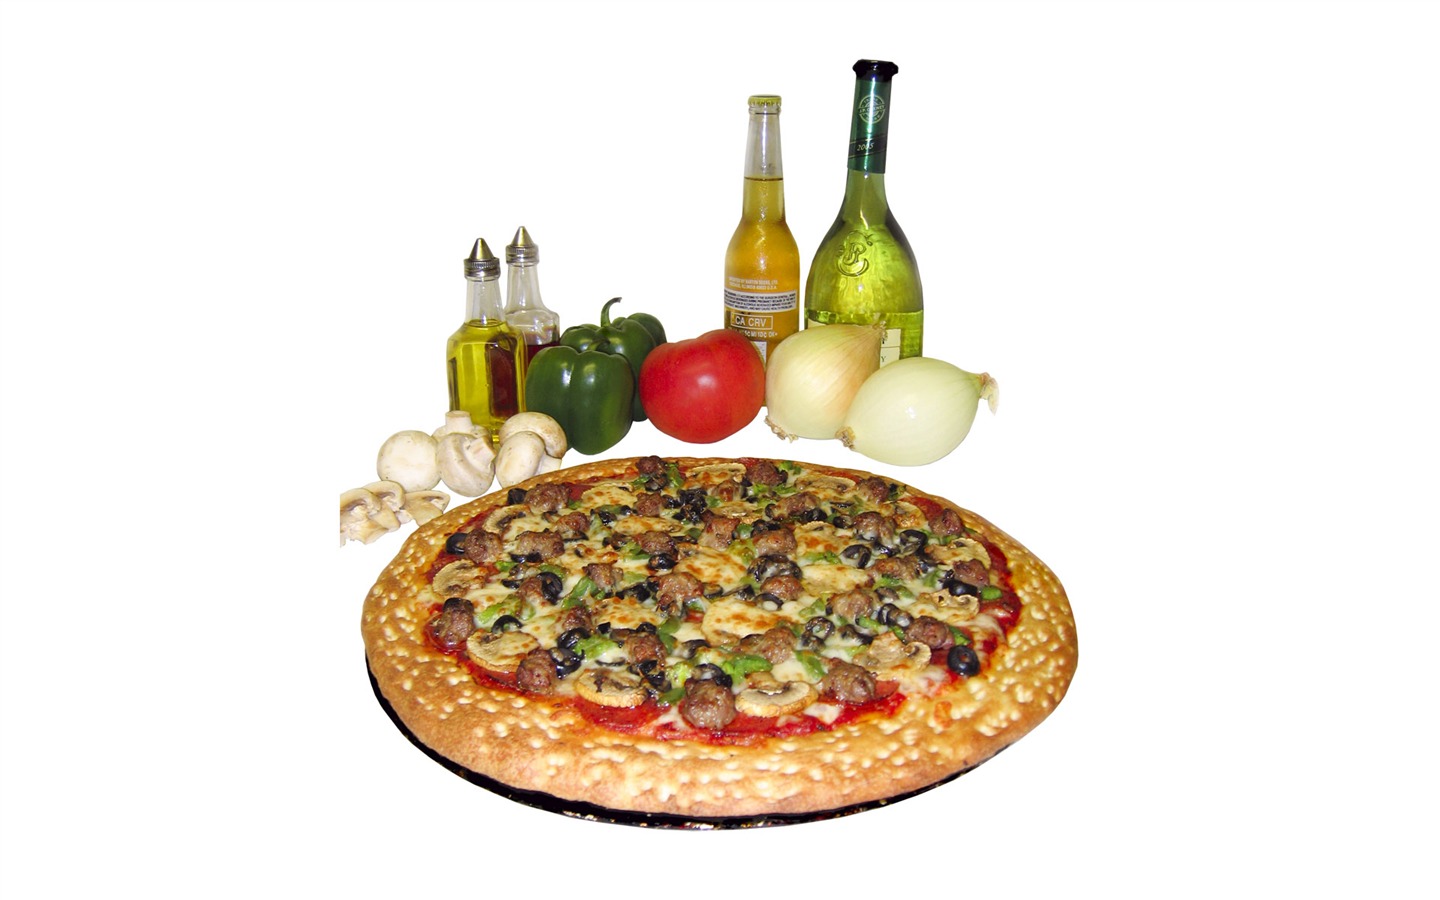 Fondos de pizzerías de Alimentos (3) #11 - 1440x900